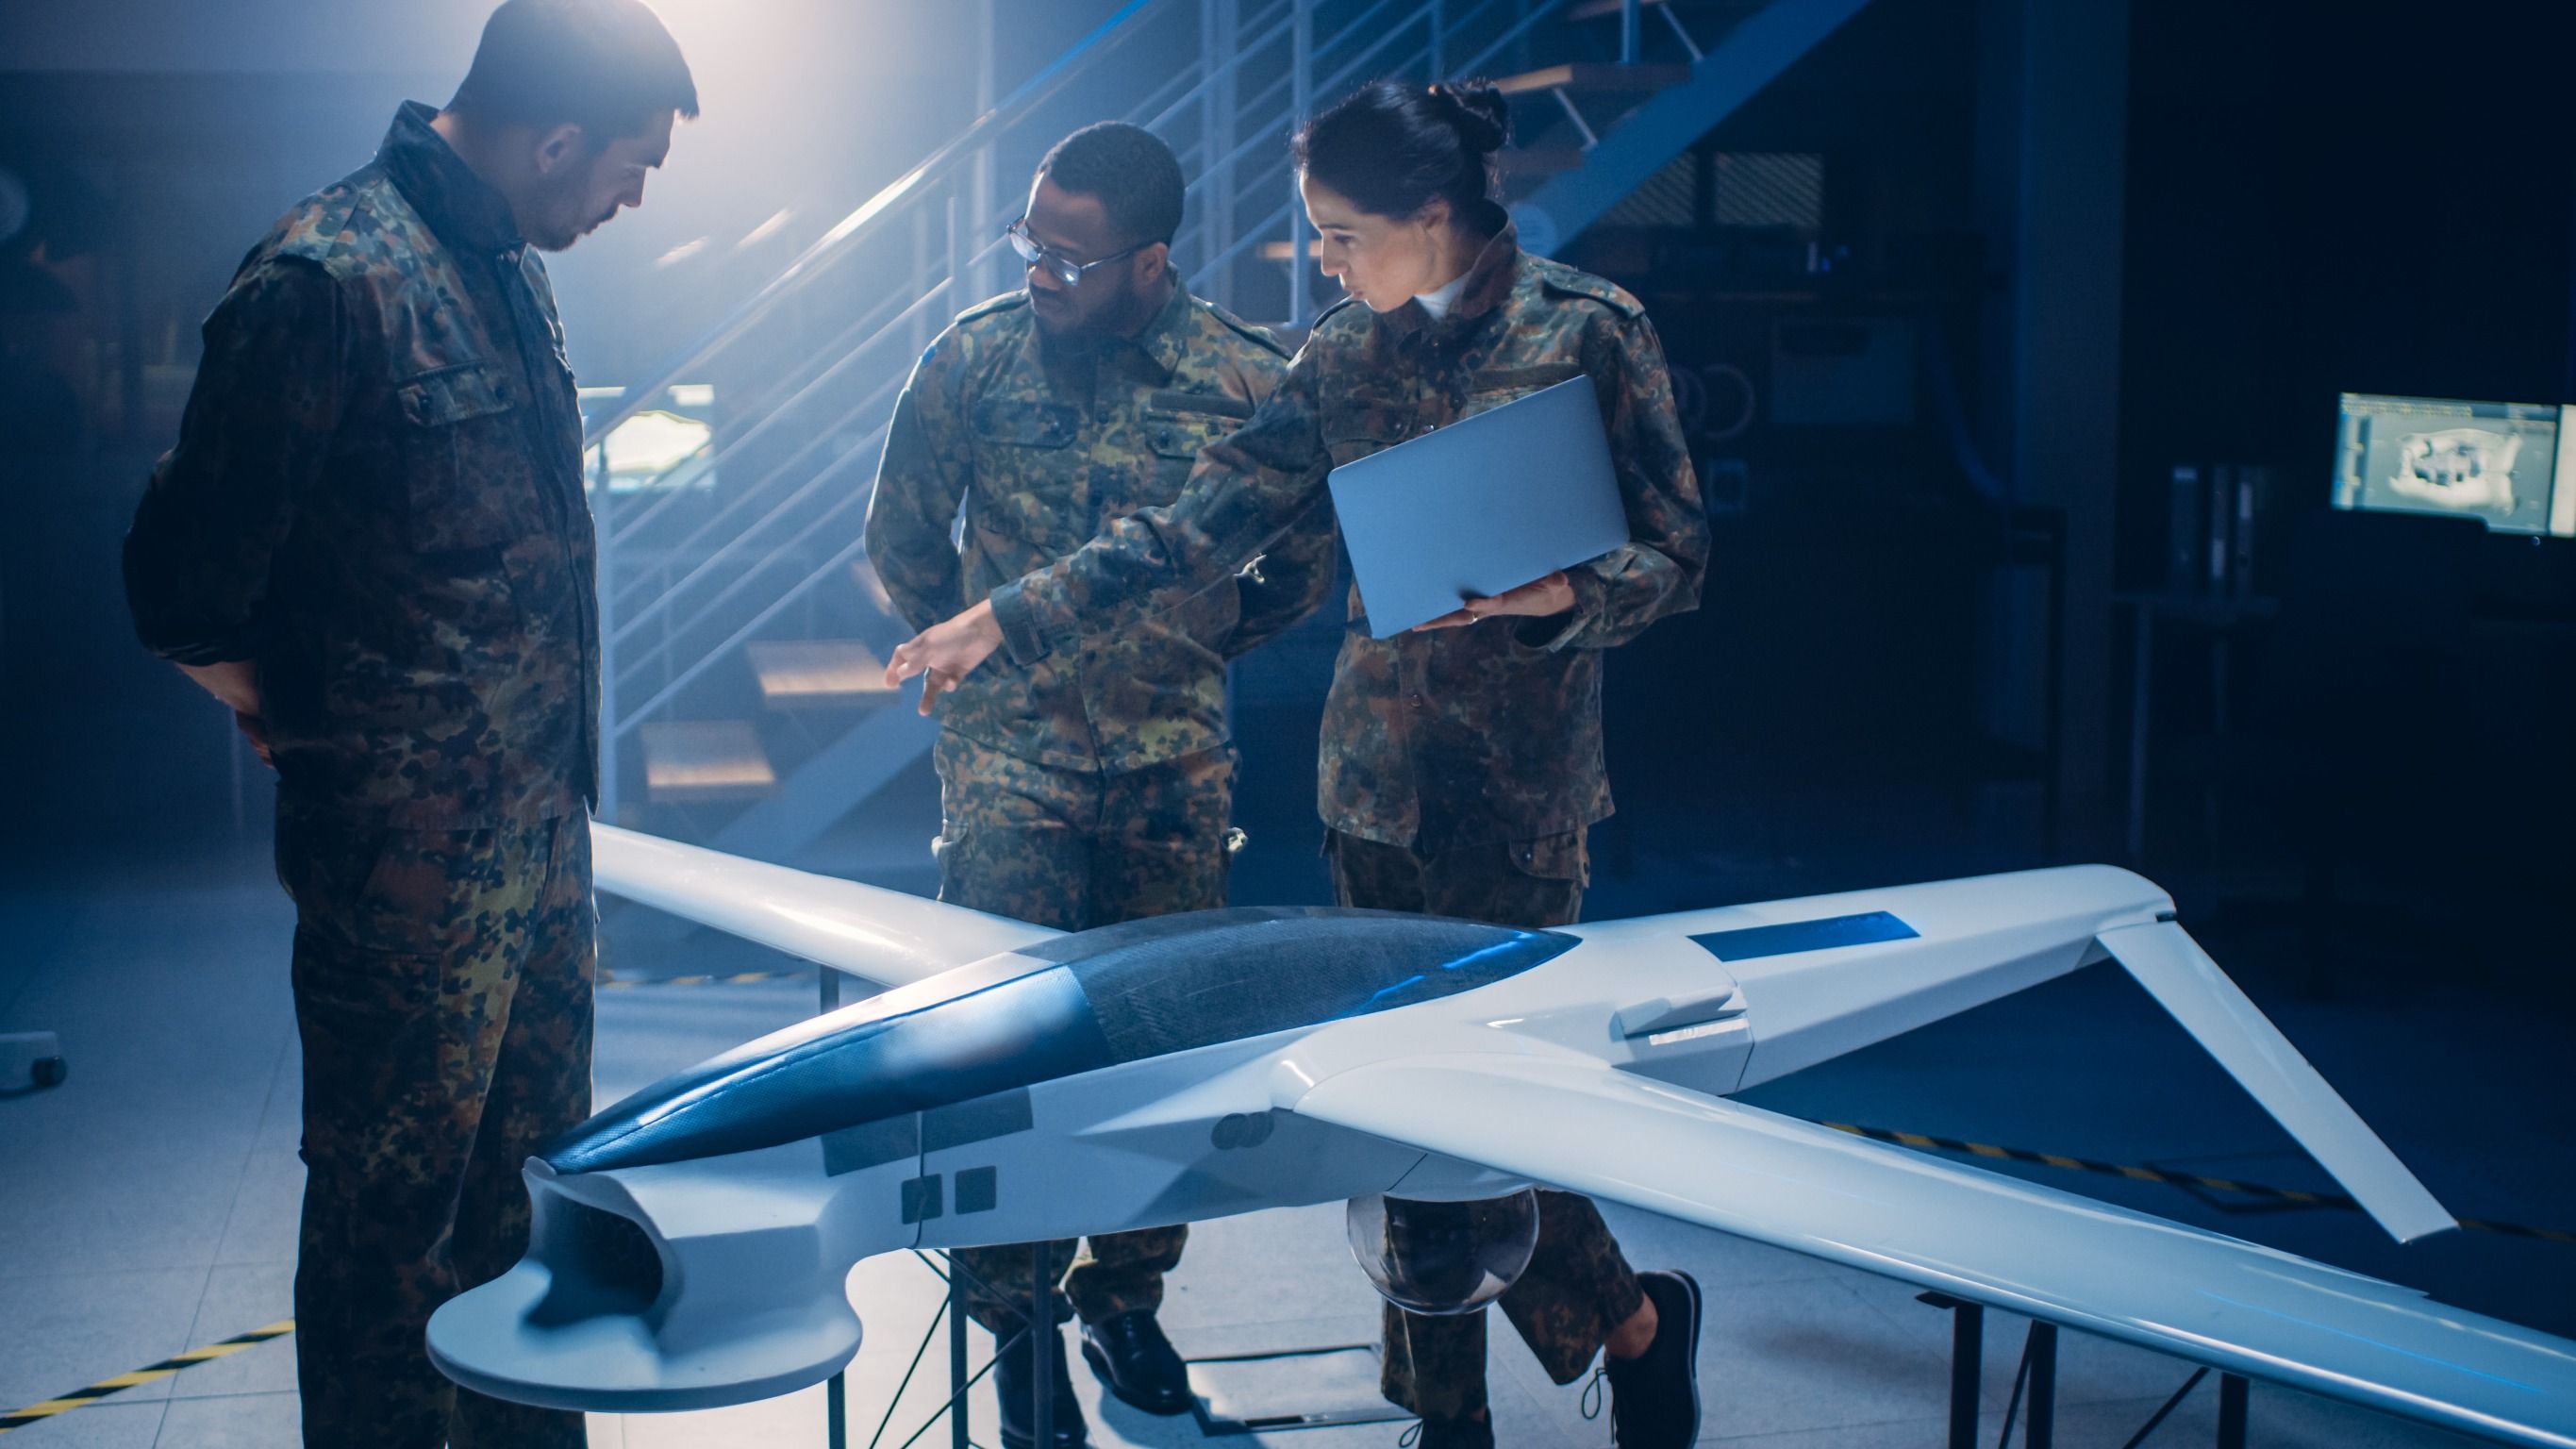 Ingenieros aeroespaciales del ejército trabajan en drones de vehículos aéreos no tripulados. Imagen de archivo.